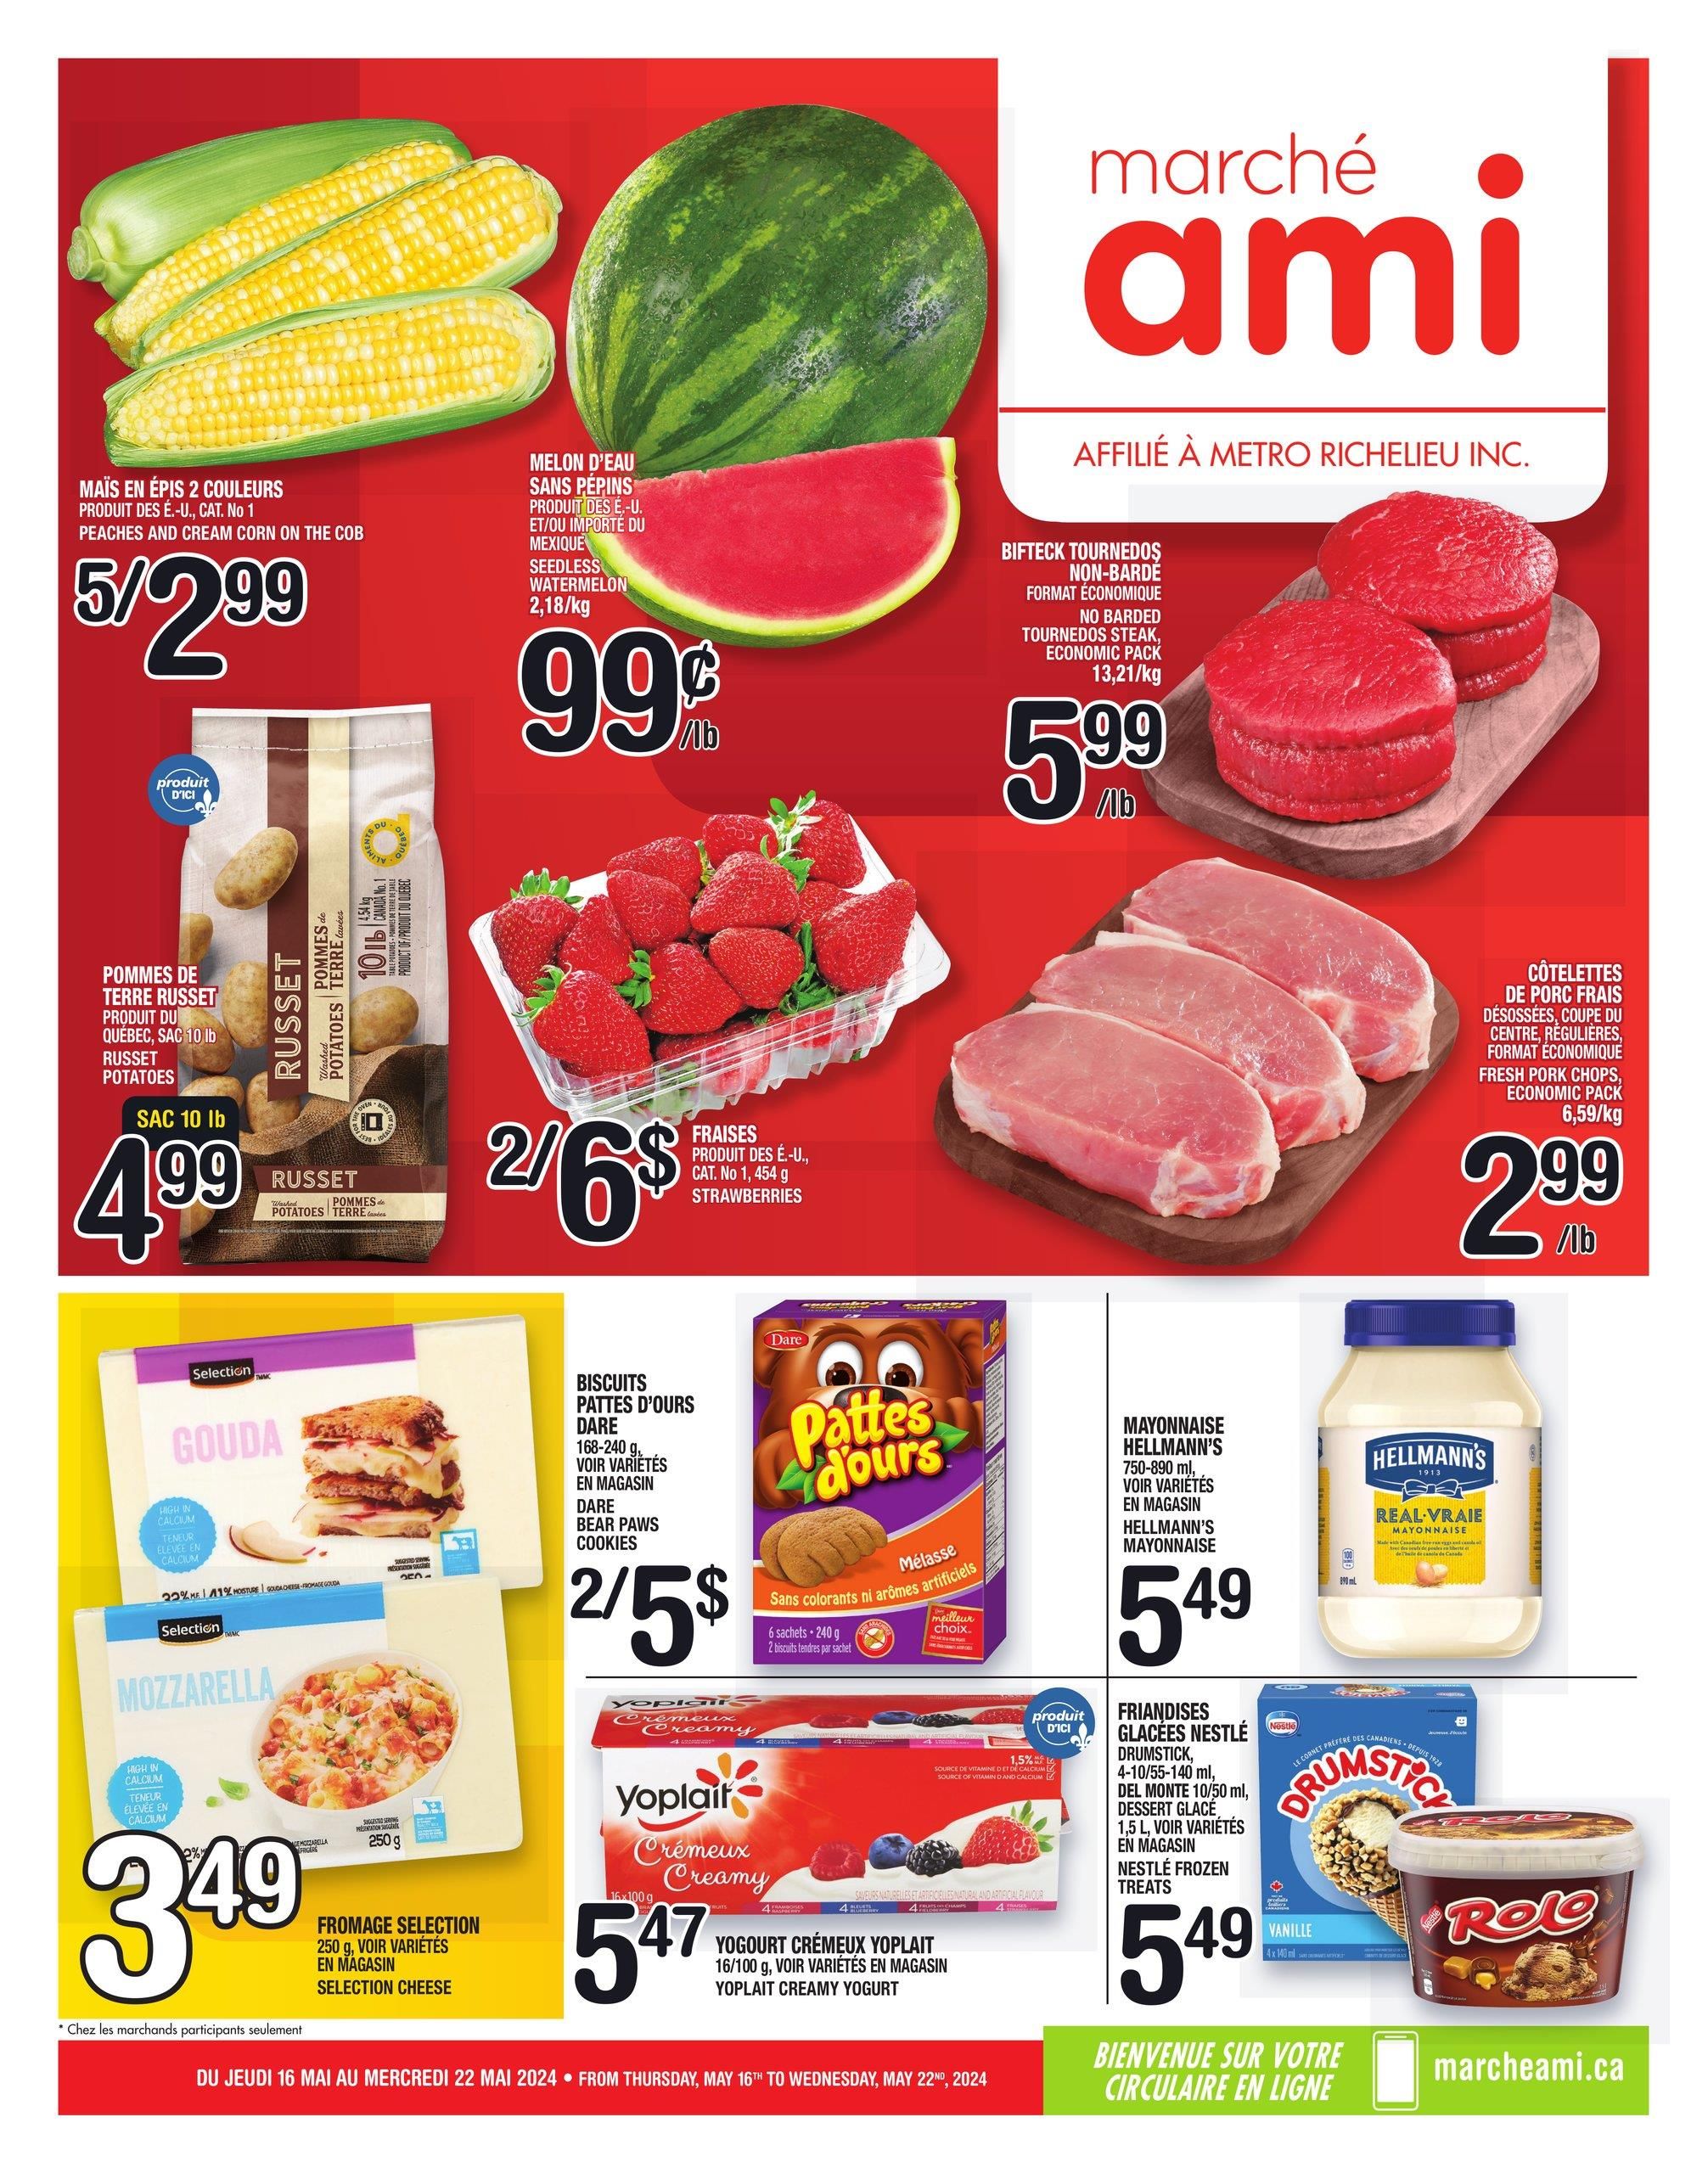 Marché Ami - Weekly Flyer Specials